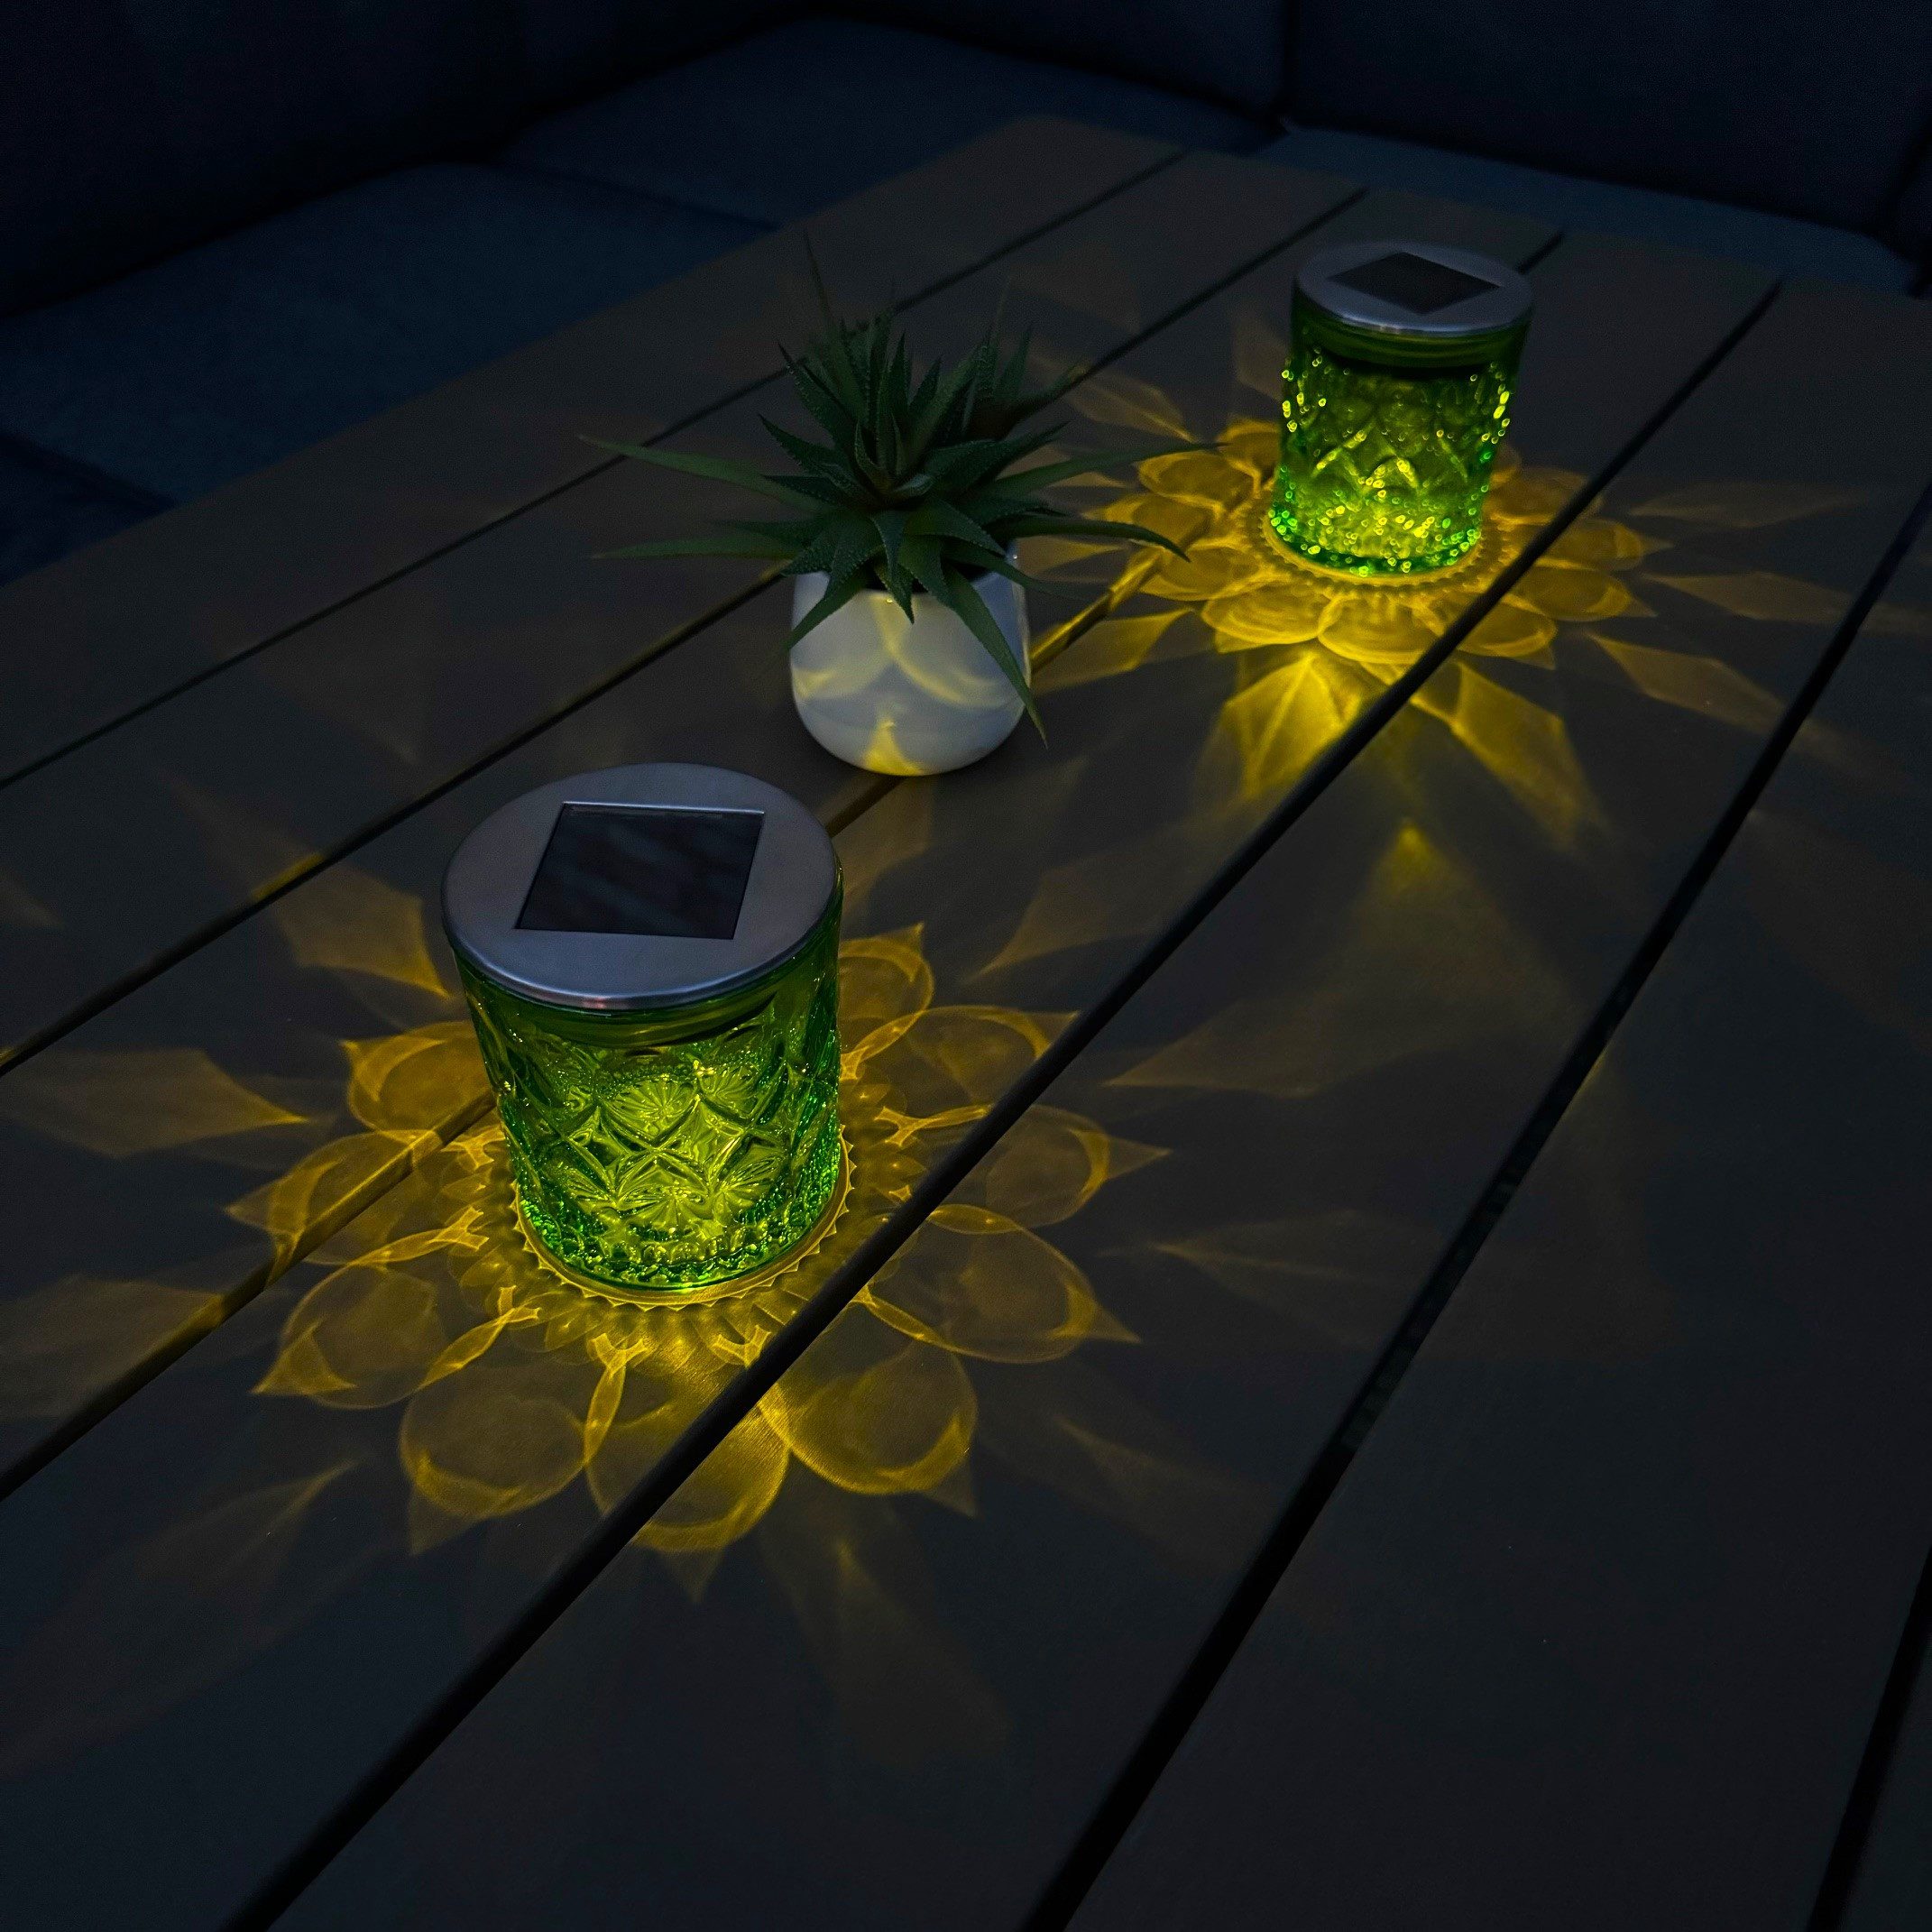 Online-Fuchs LED Außen-Tischleuchte Solar mit dekorativem Blütendesign Lichtbild - 2er Set Tischlampen, Solarlampen für Garten, Balkon, Terrasse -, Warmweiß, Farbwechsel oder Farbstop, Gartendeko outdoor